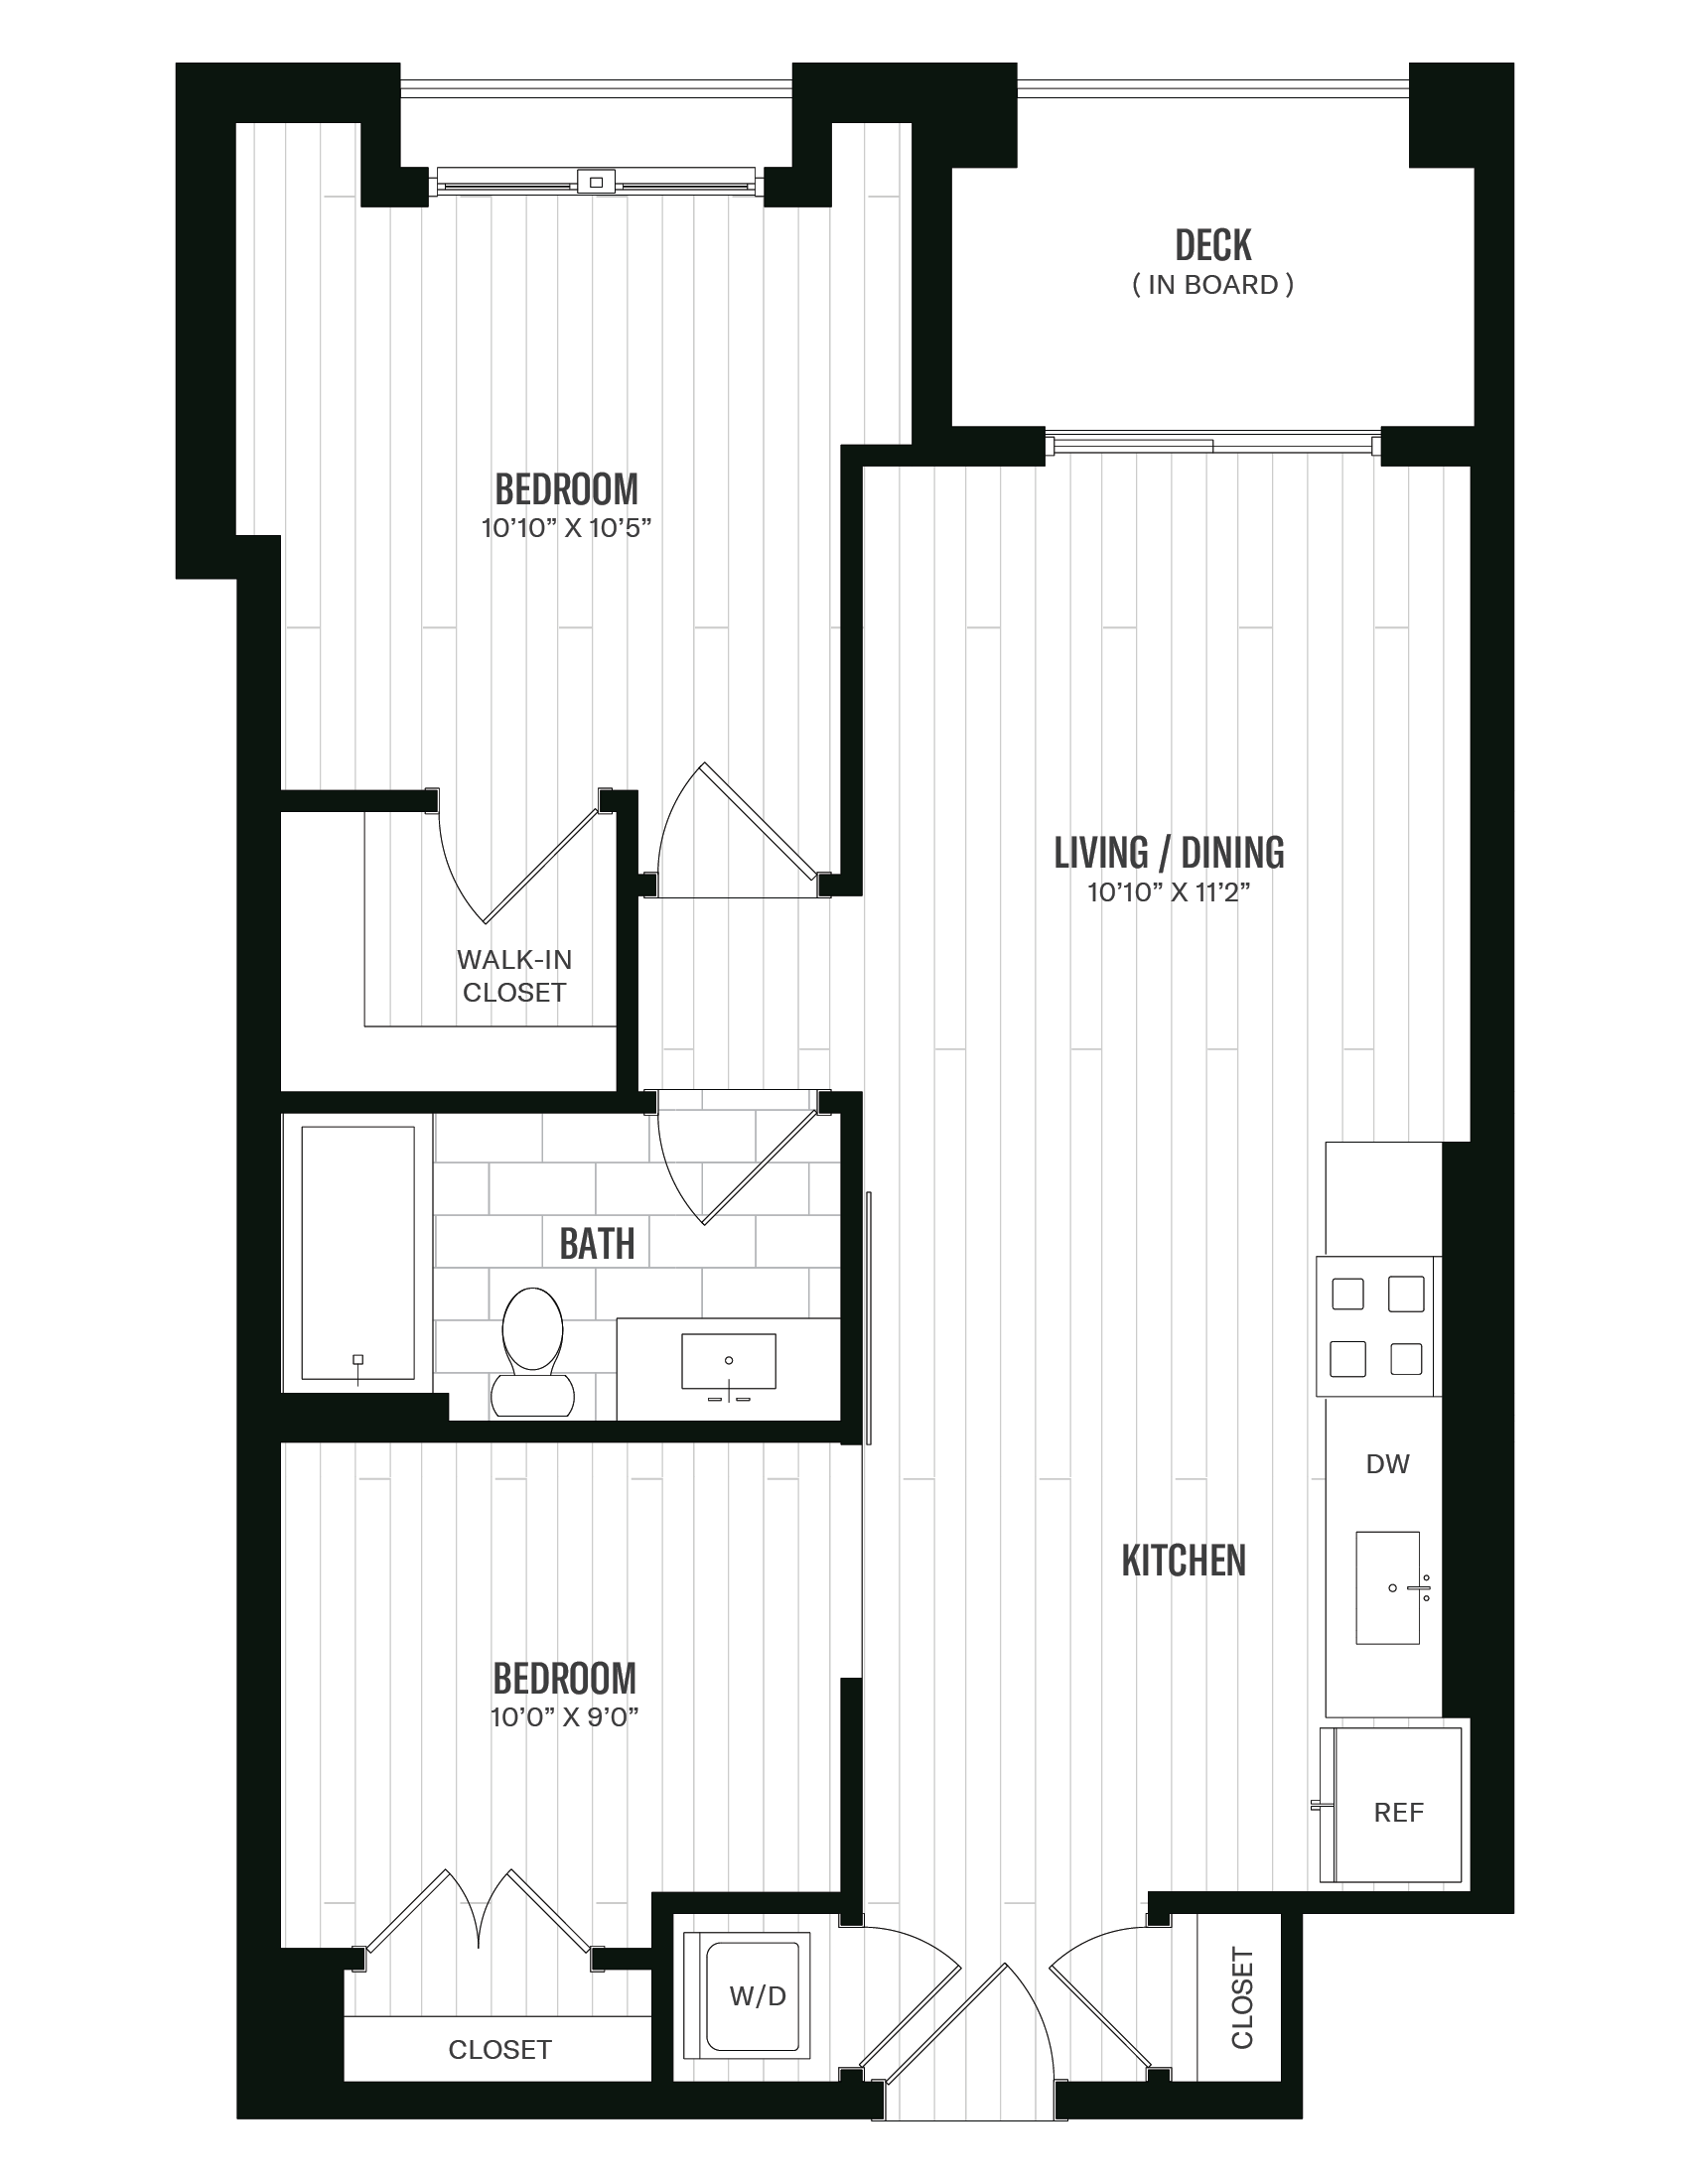 Floorplan image of unit 426